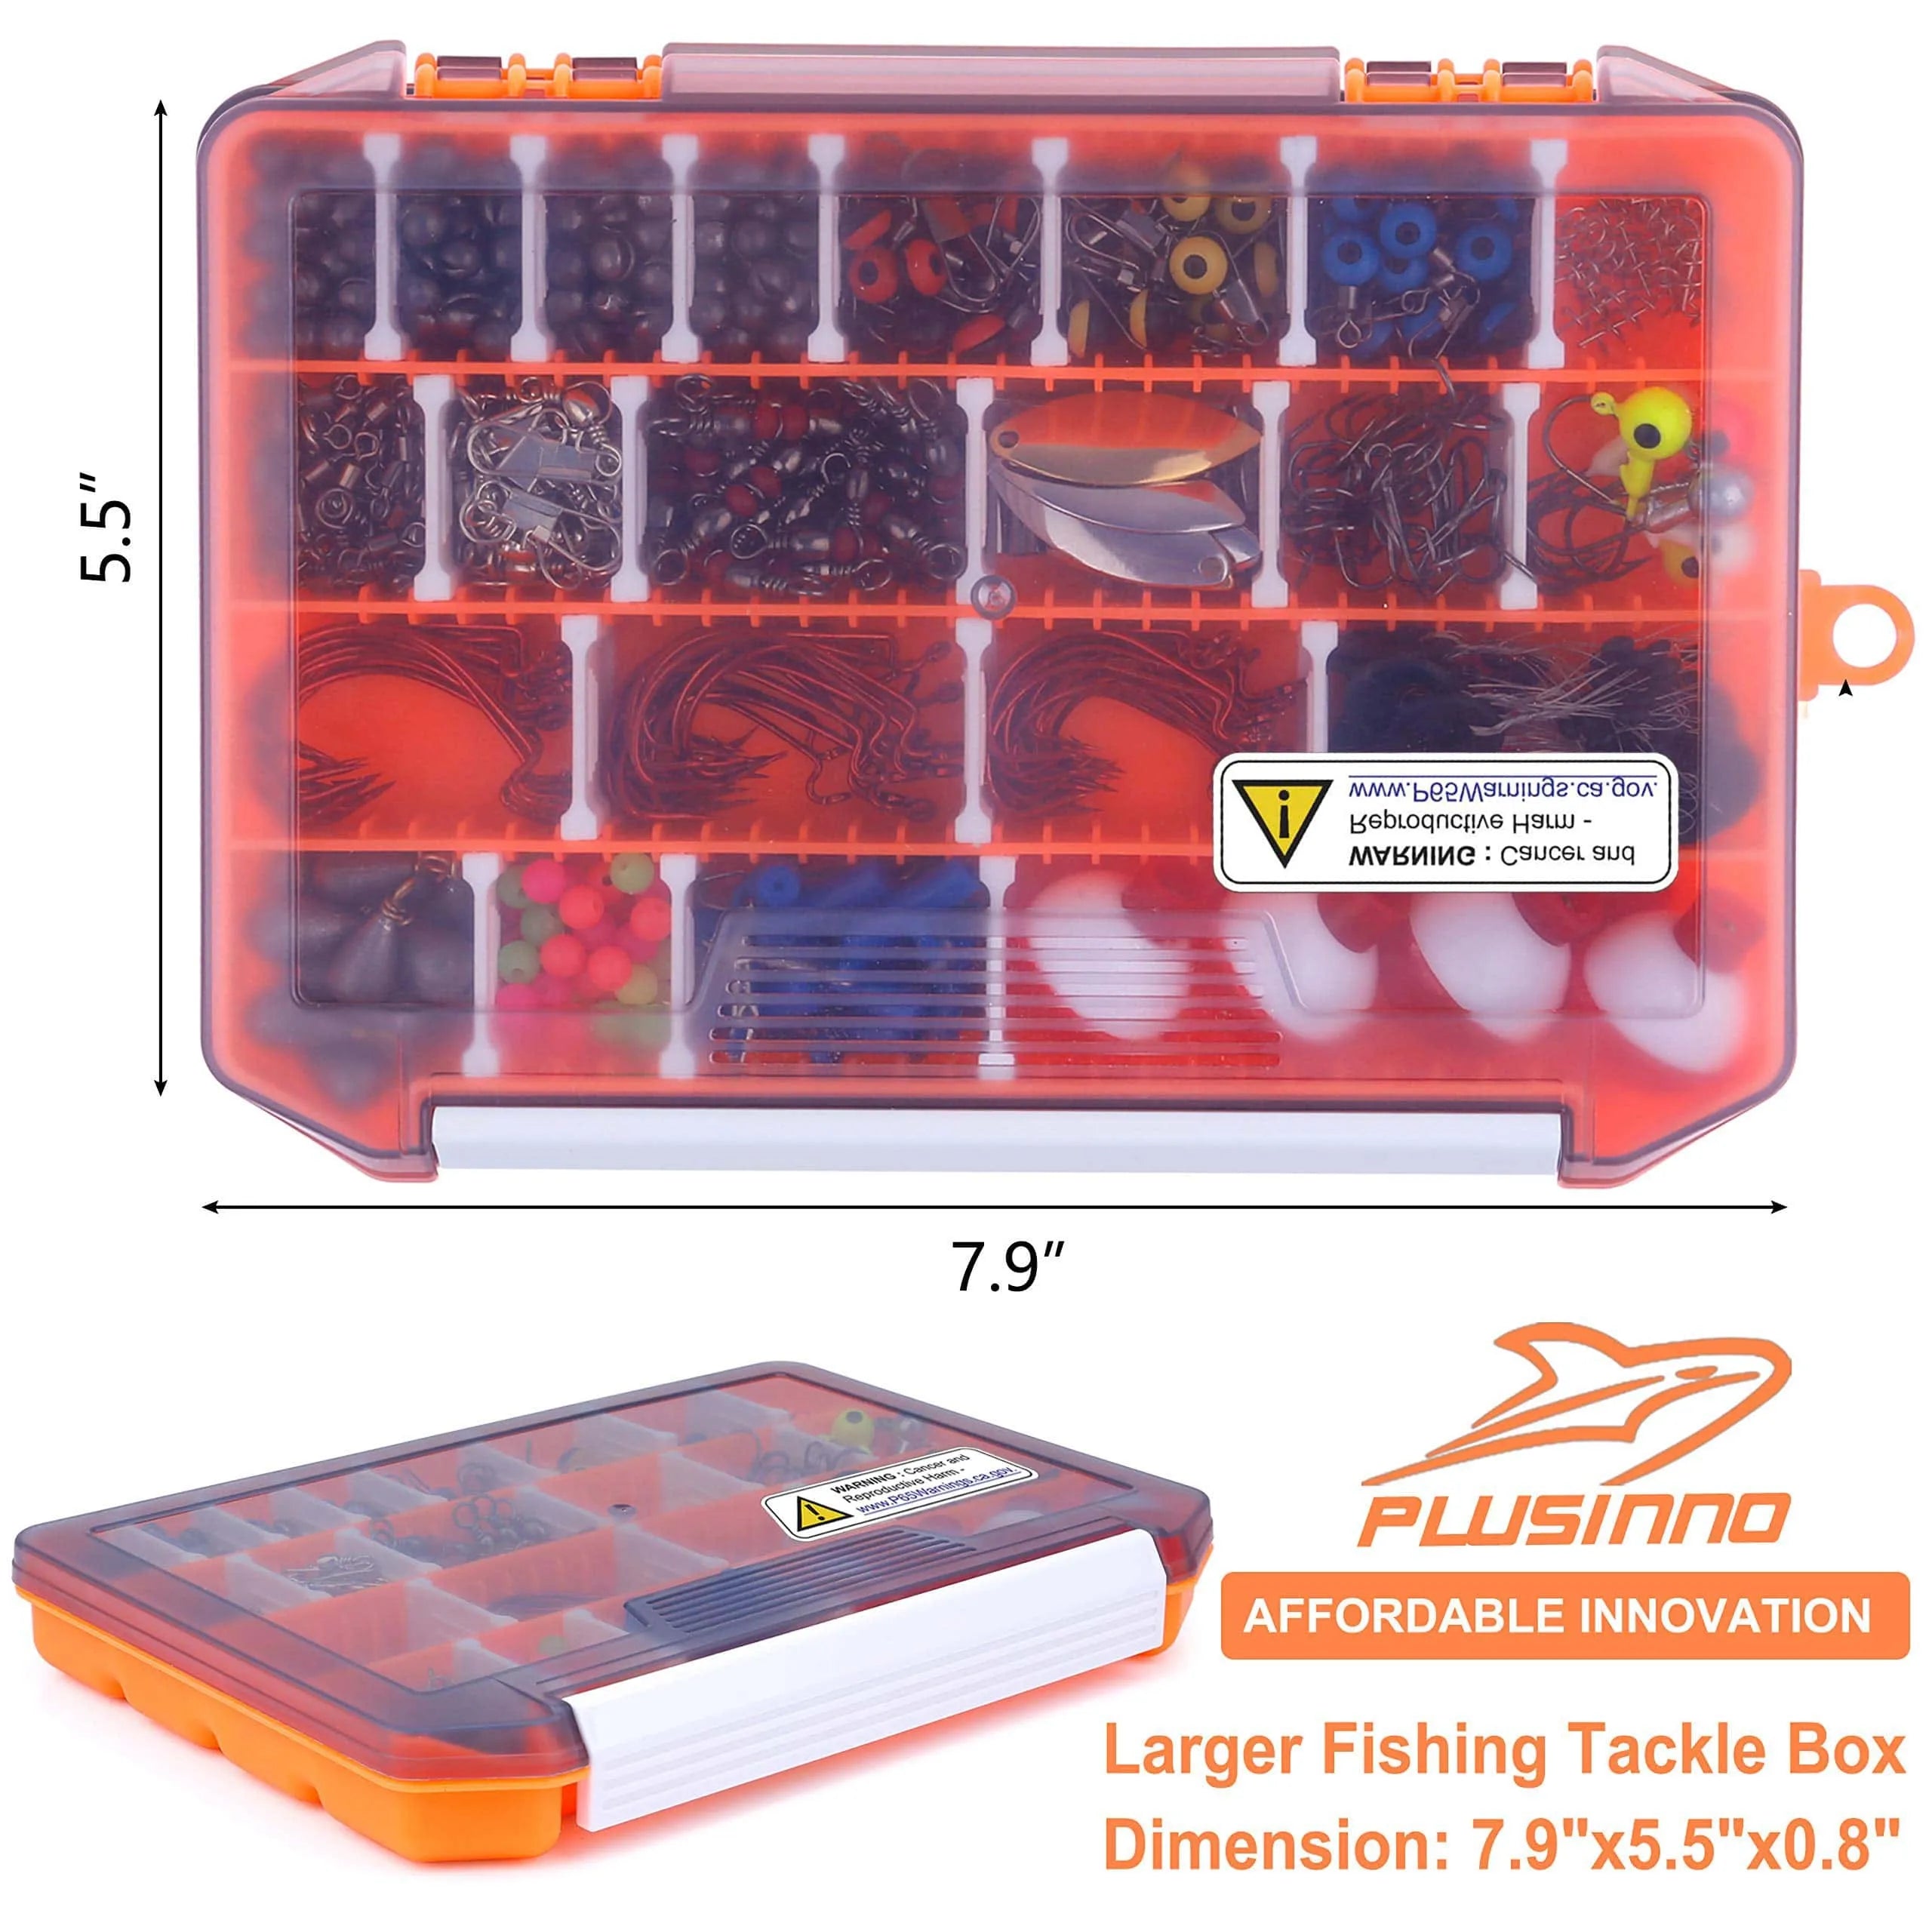 PLUSINNO 263Pcs Fishing Accessories Kit – Plusinno